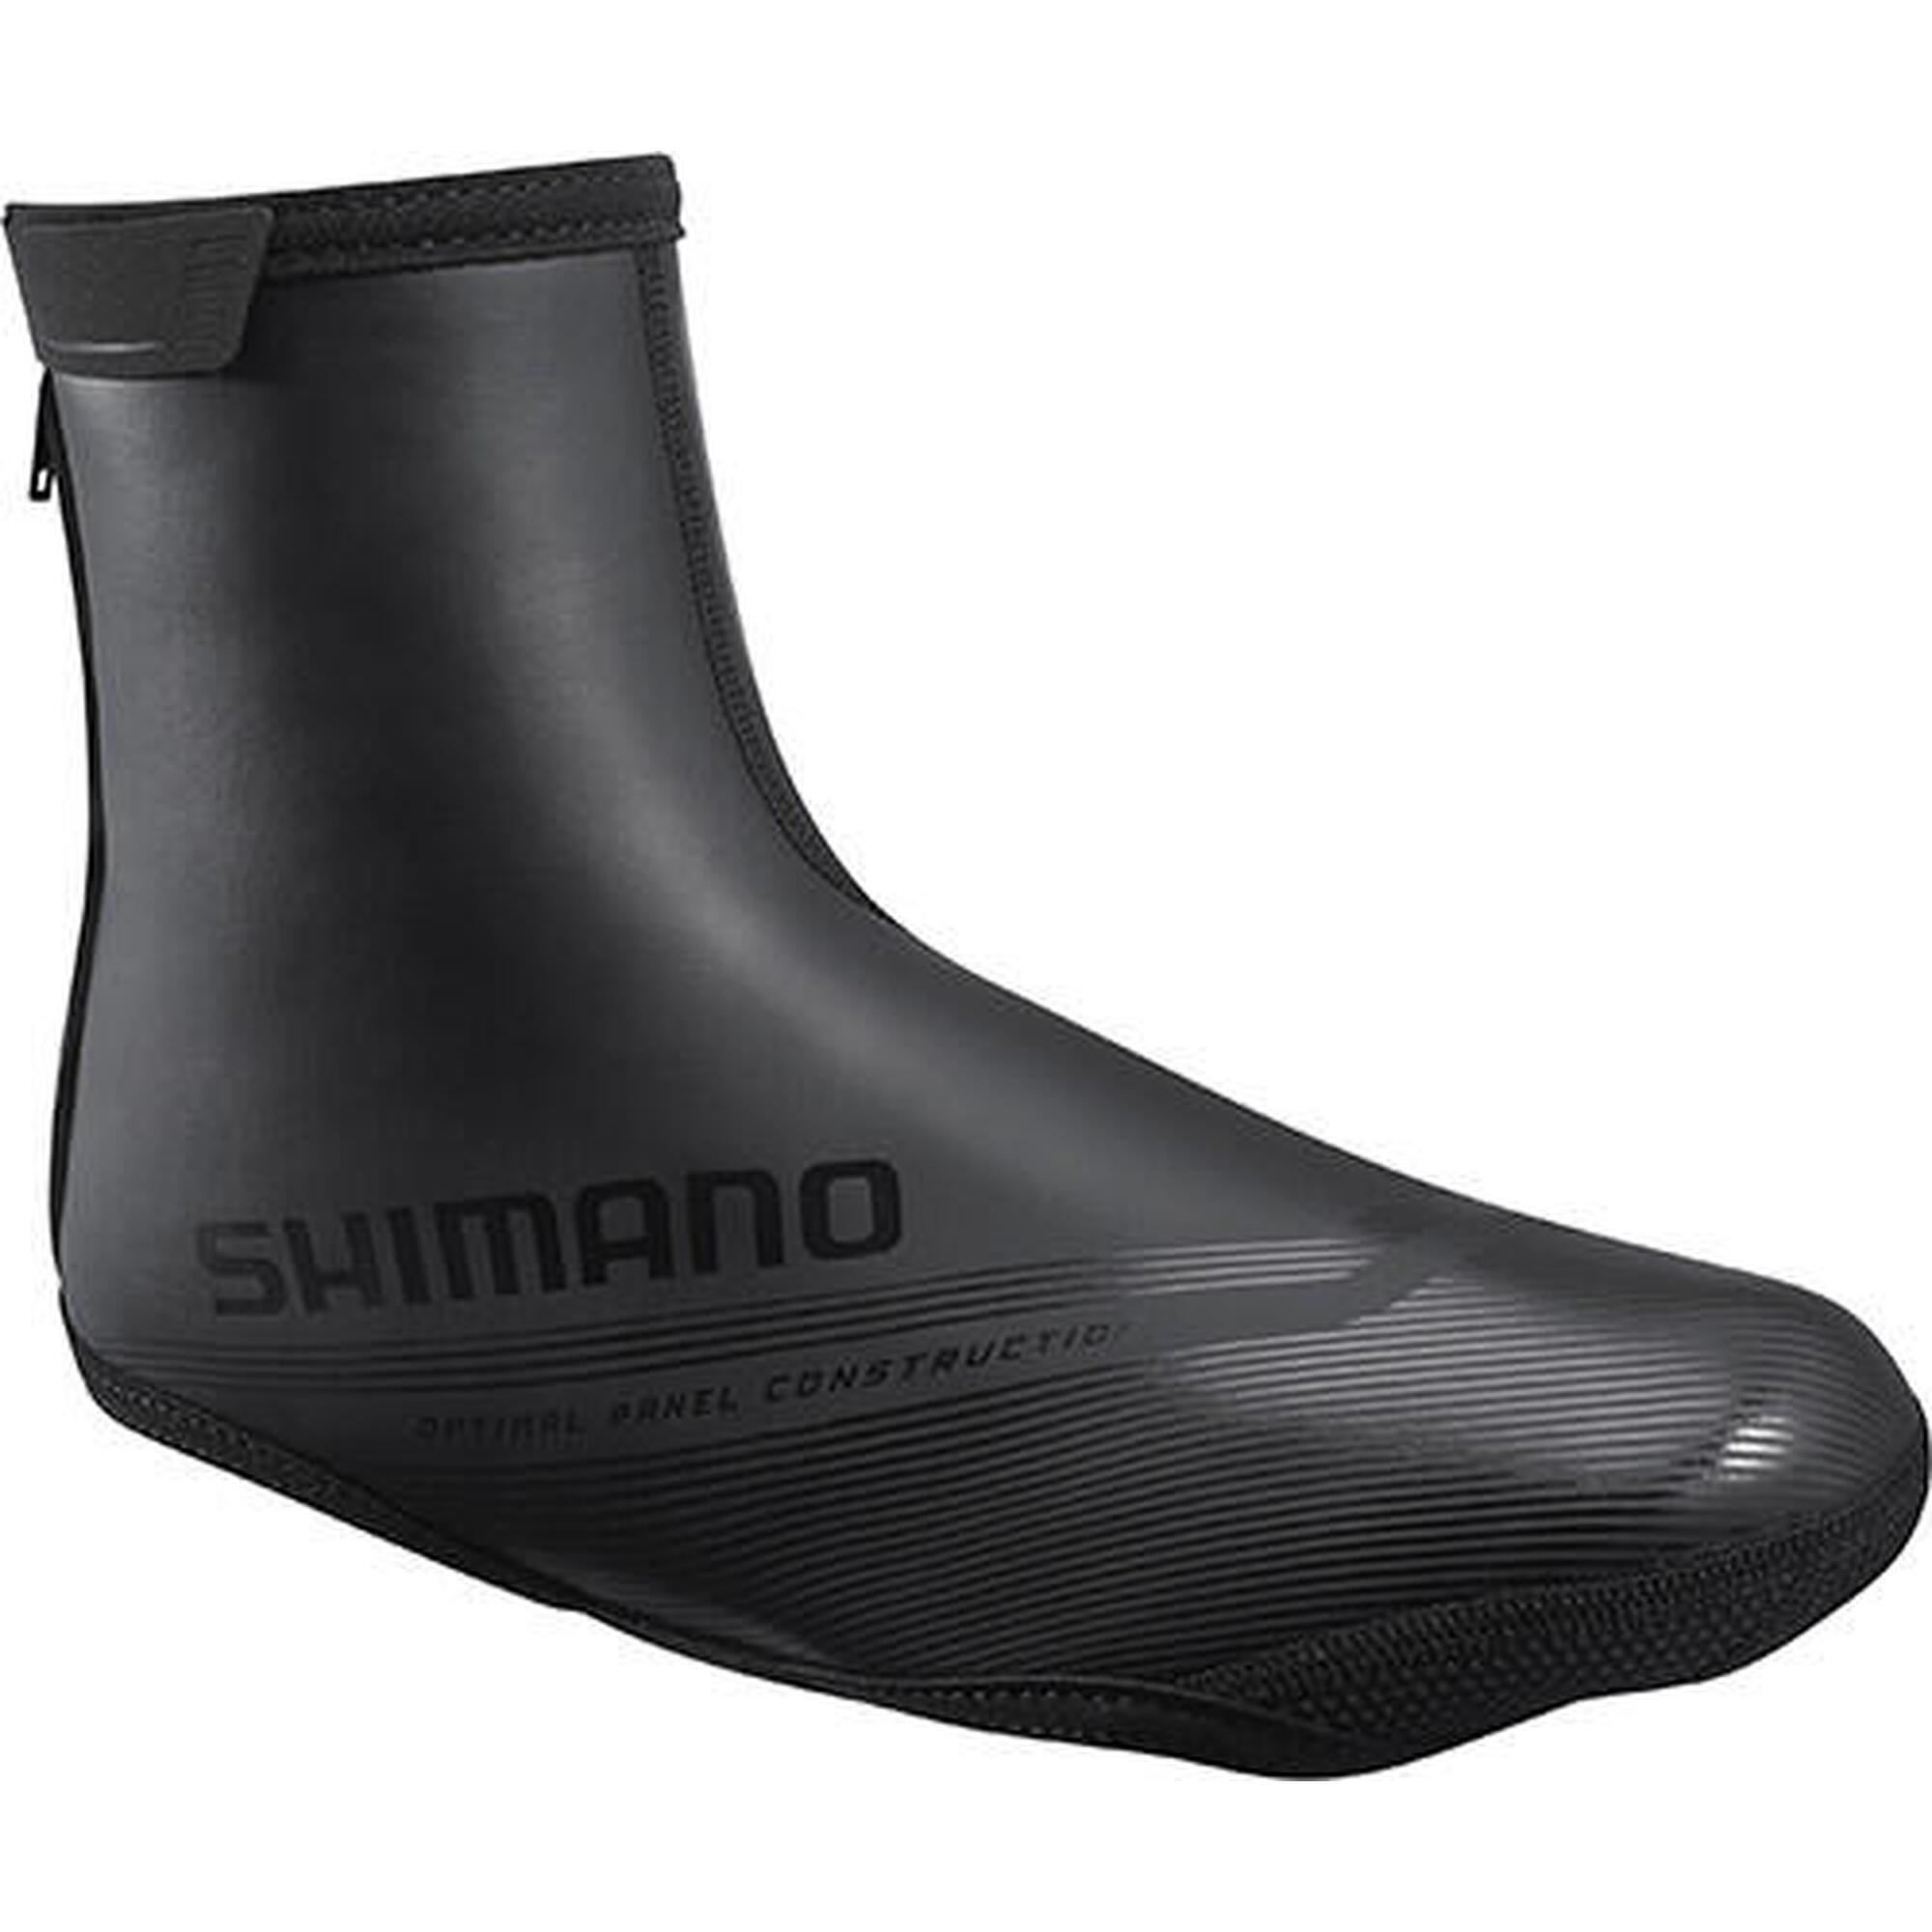 Shimano overschoenen S2100D zwart